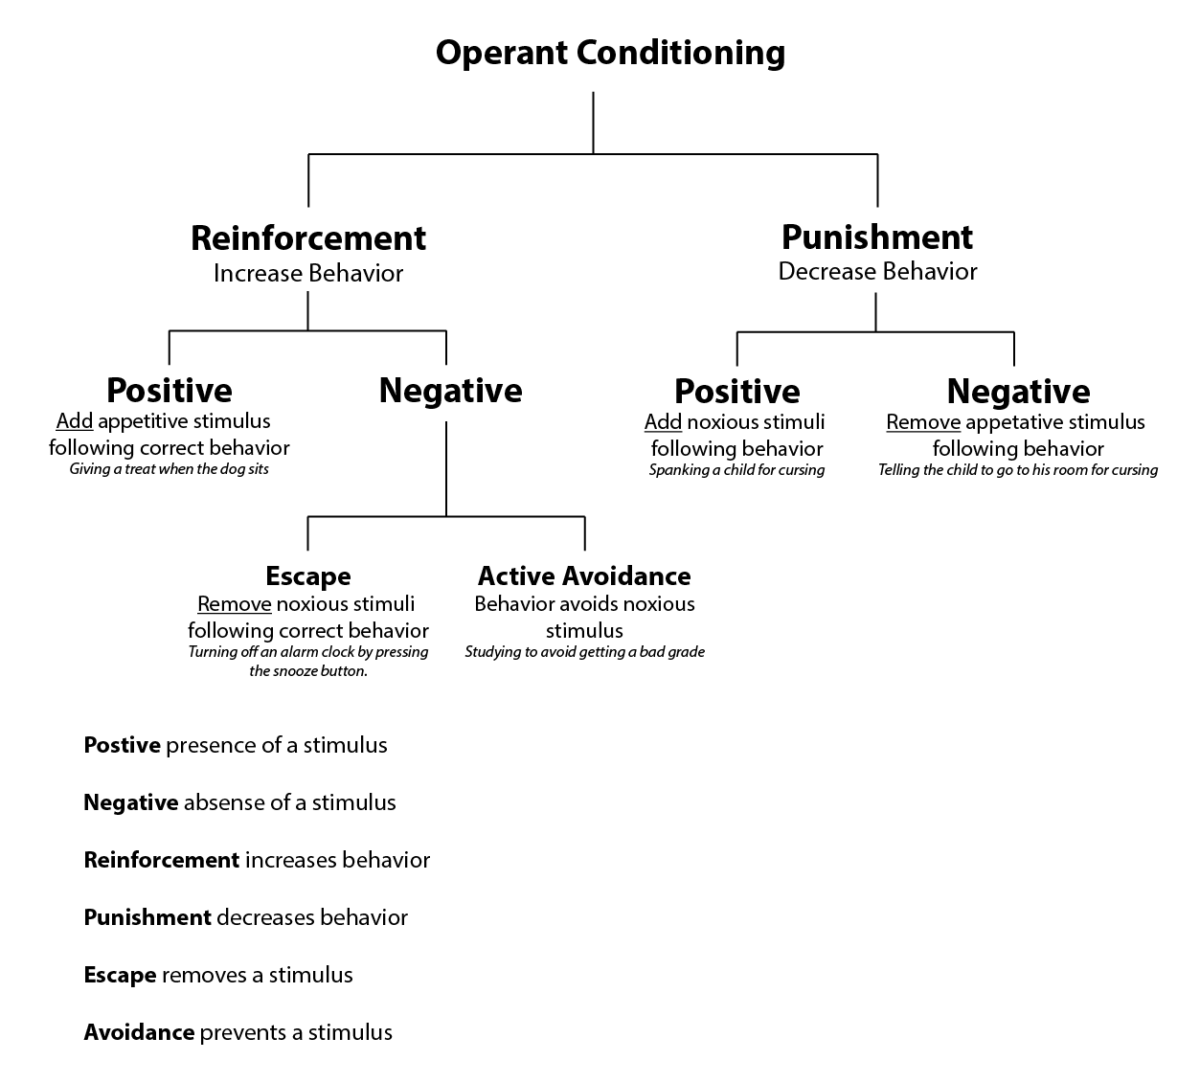 Operant conditioning diagram